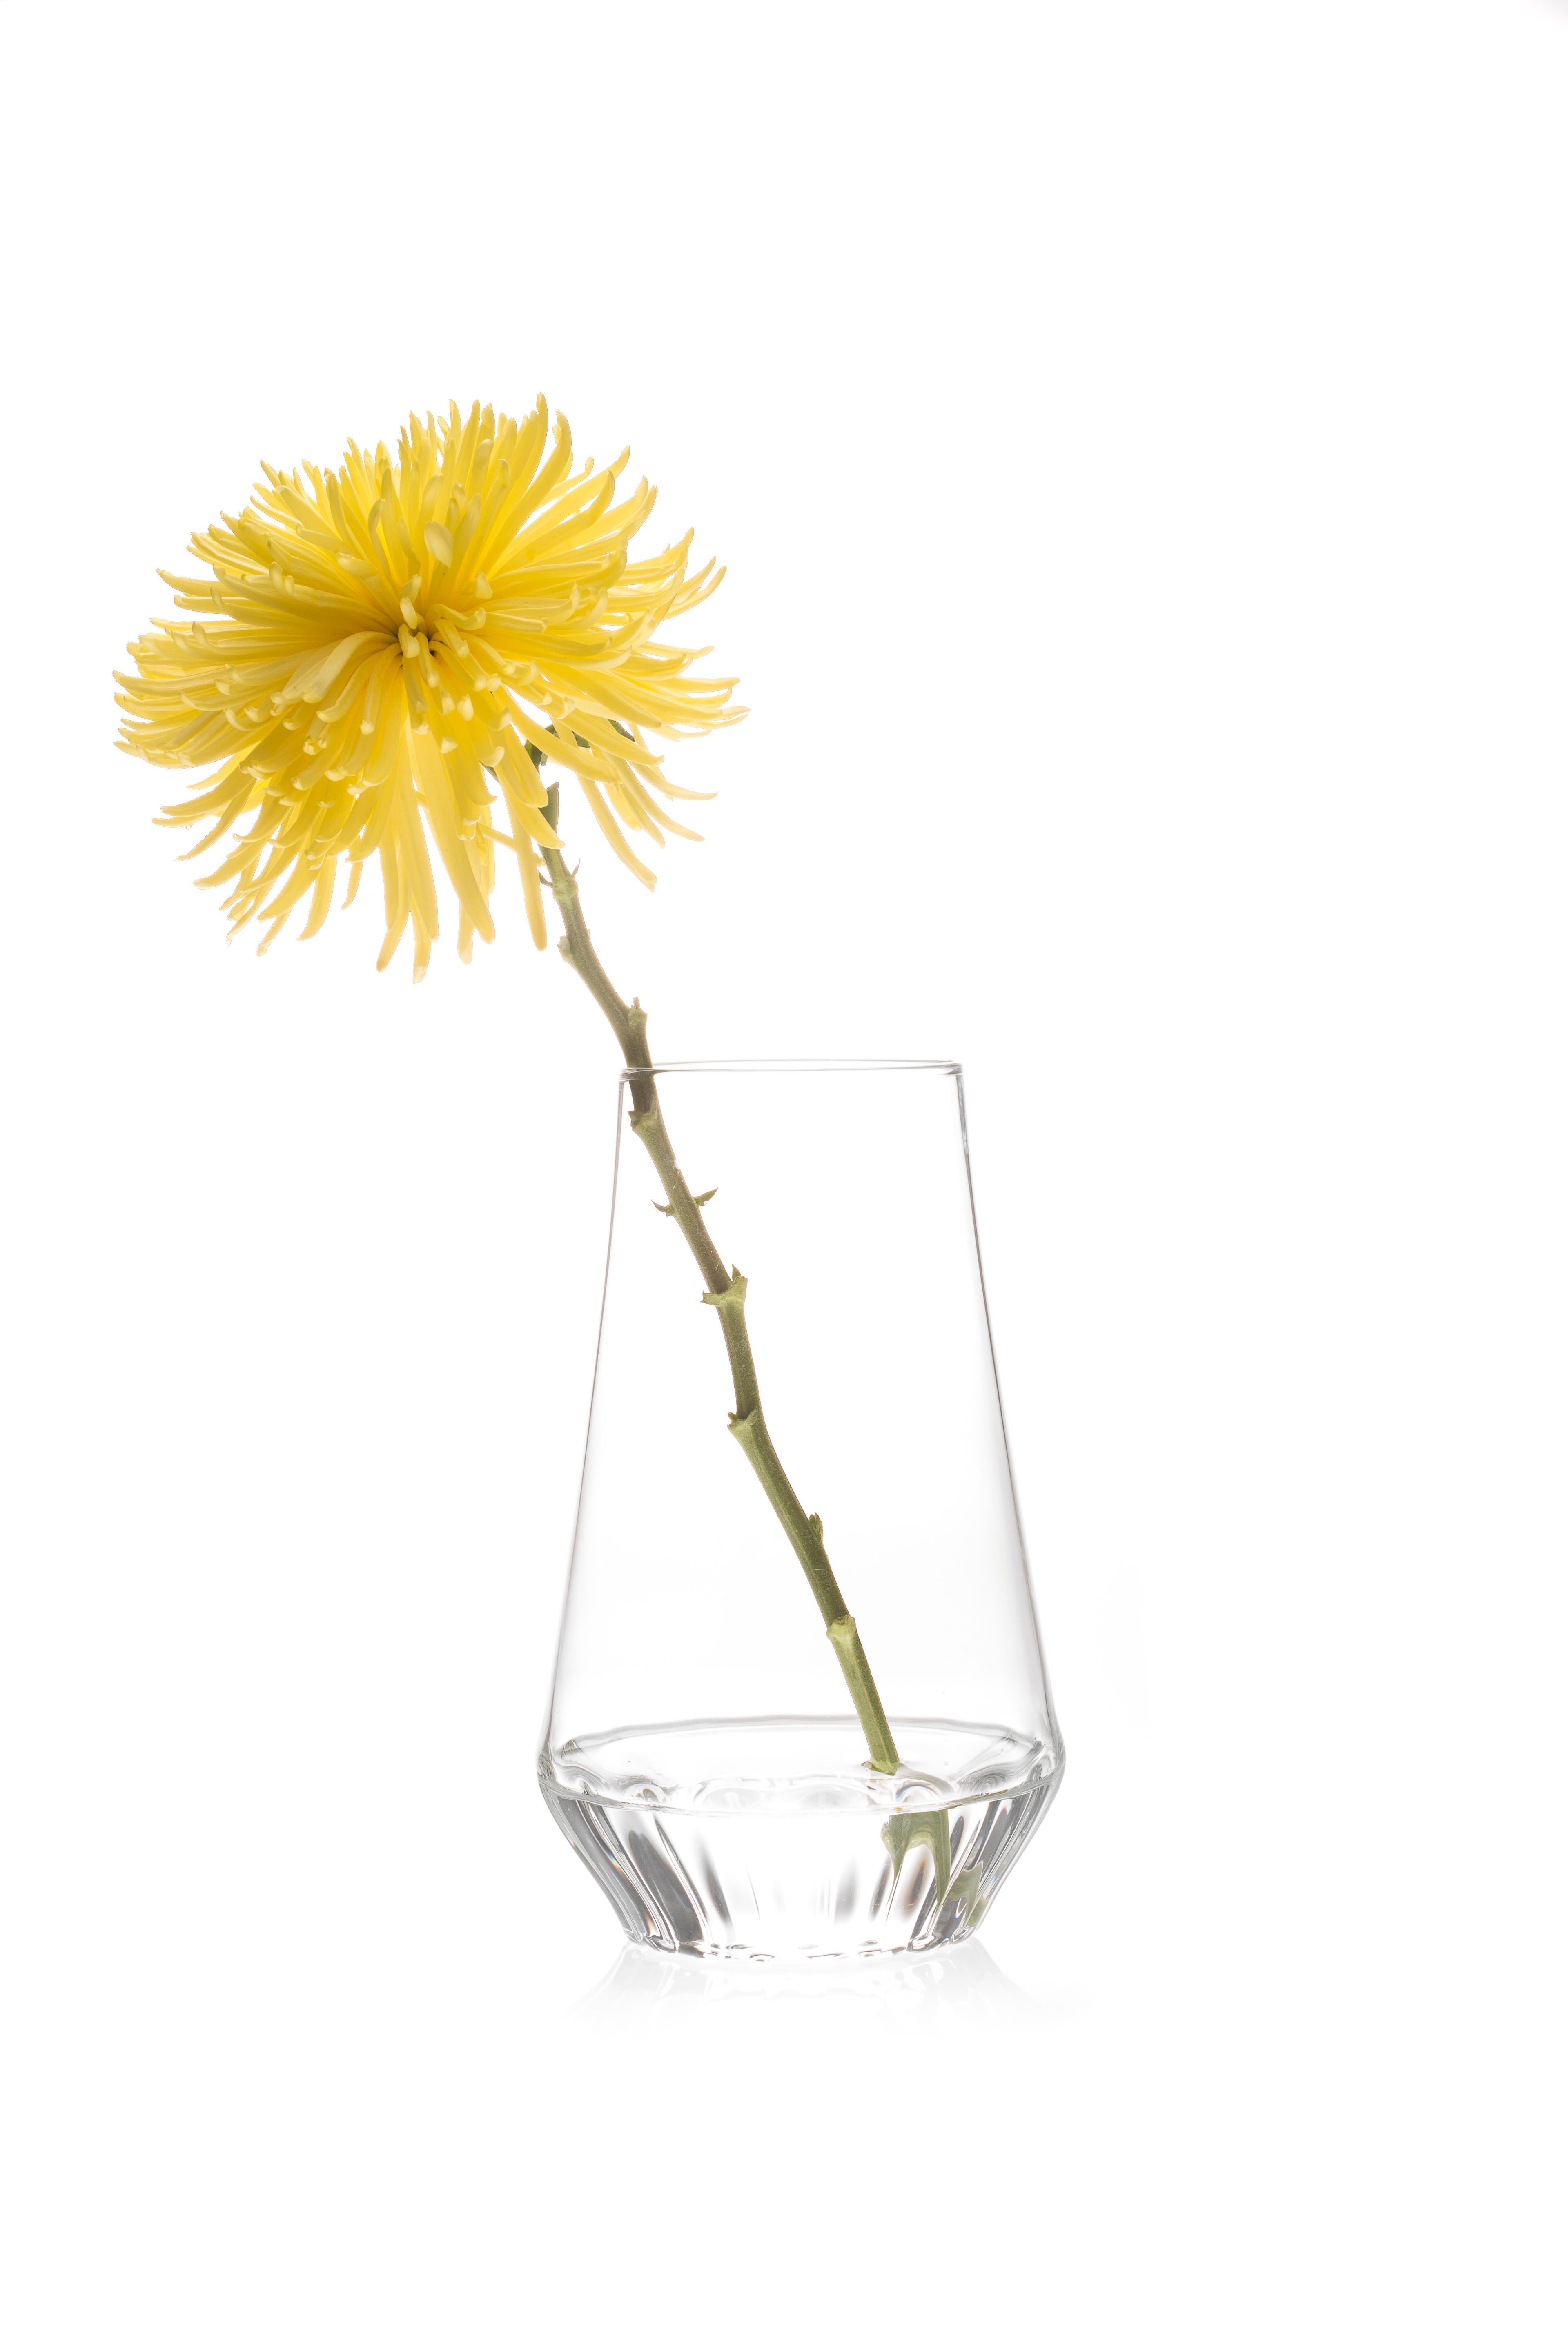 ROSSI VASE MITTEL

Ob ein einzelner Stiel oder ein Strauß, das klare Glas hebt den Blumenstiel hervor und macht ihn zu einem festen Bestandteil des Arrangements. Der linsenförmige Effekt des geriffelten Glases an der
Der Boden verdeckt die Enden der